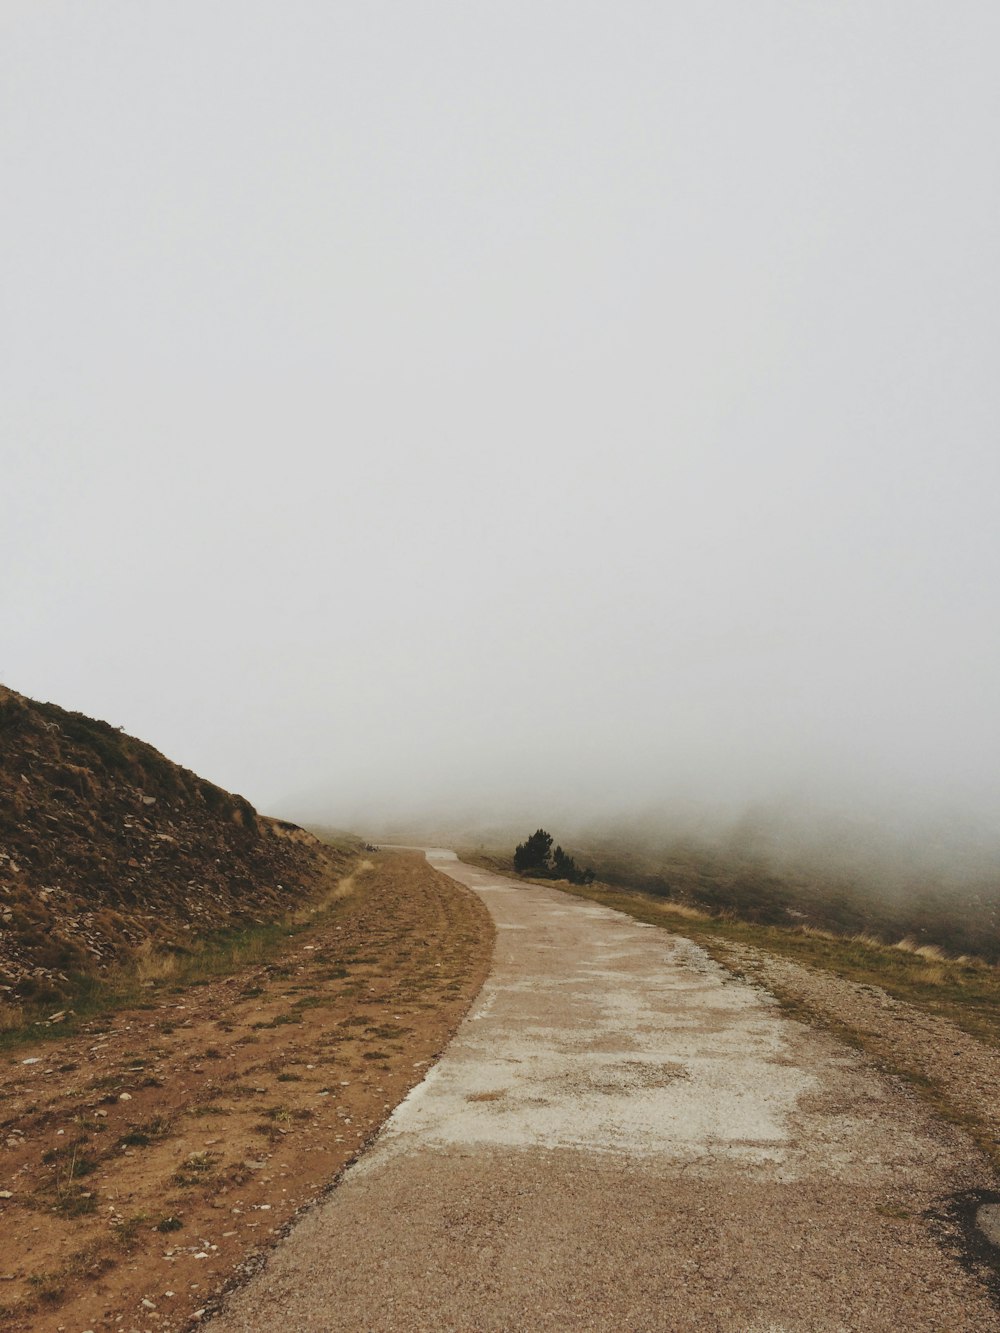 Szenerie einer Straße im Nebel